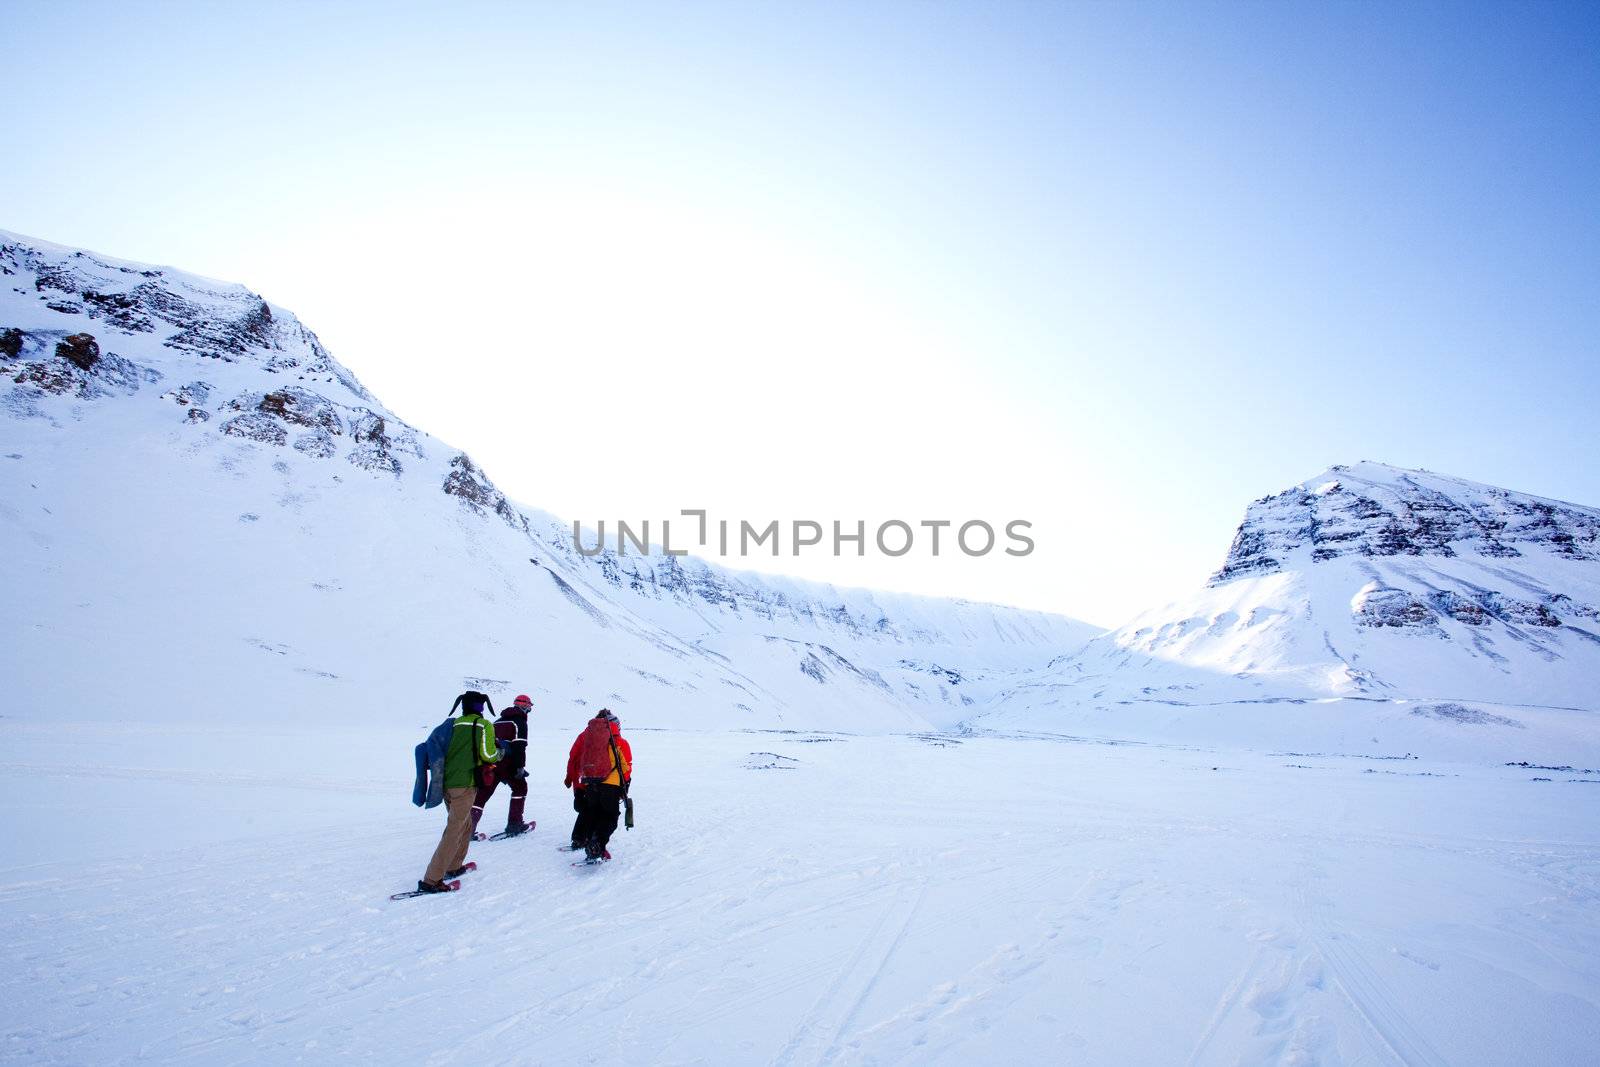 A group of people treking across a winter landscape